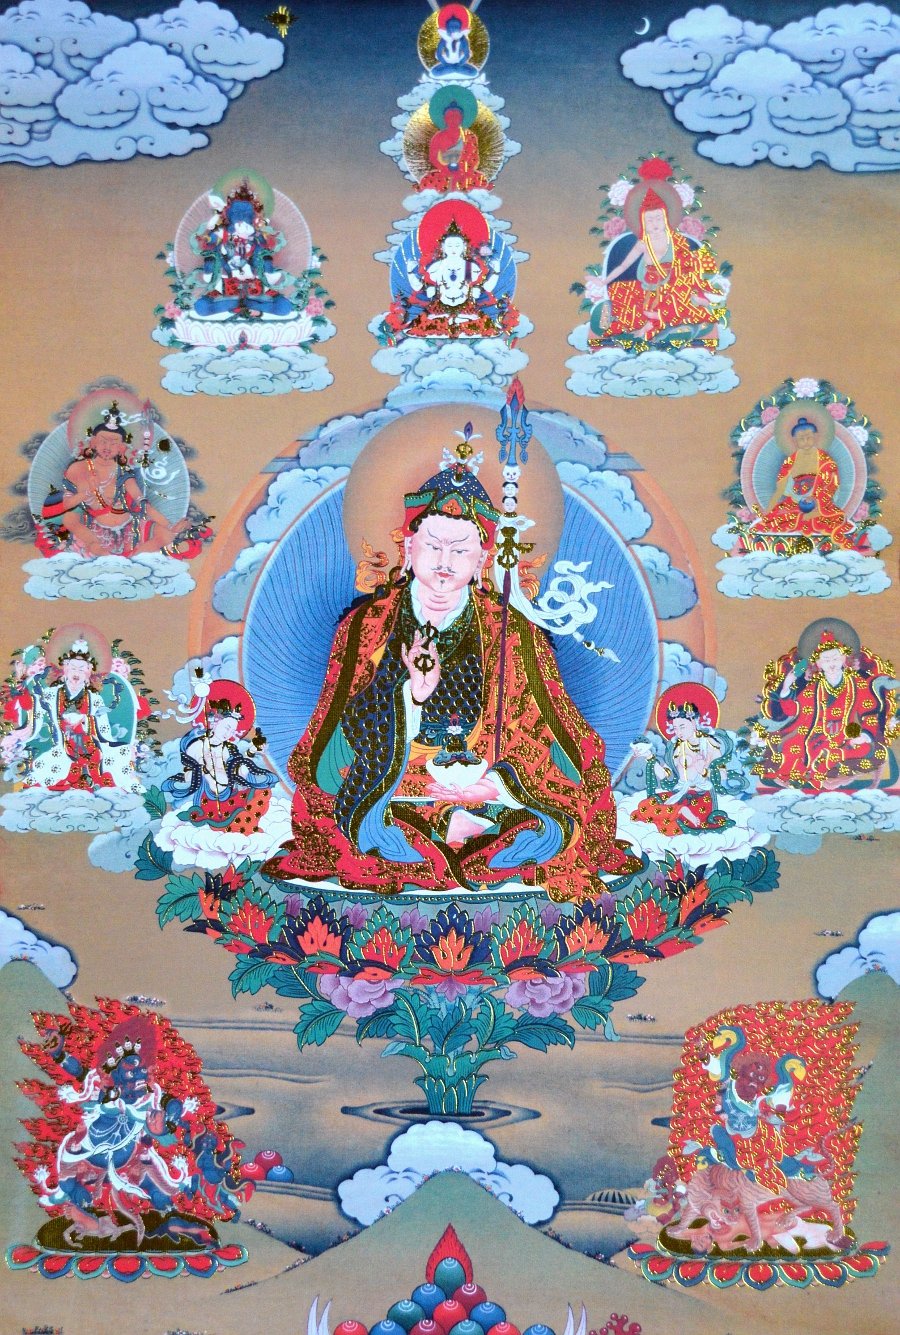 Тханка Гуру Падмасамбхава в окружении божеств (печатная, 39,5 х 62 см), 39,5 х 62 см, изображение: 20,5 х 30 см